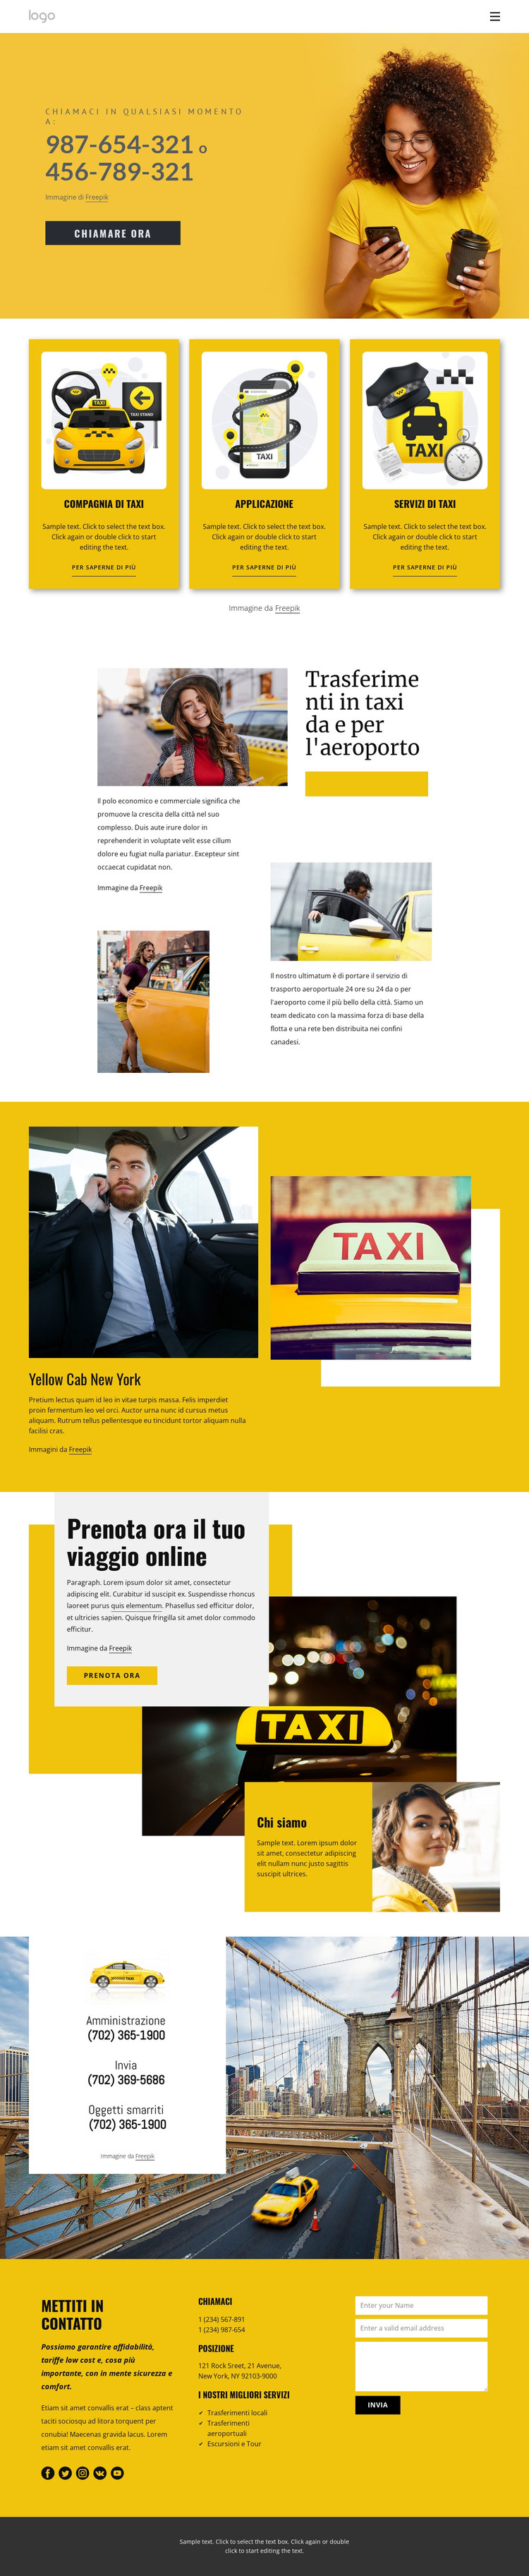 Servizio taxi di qualità Modello HTML